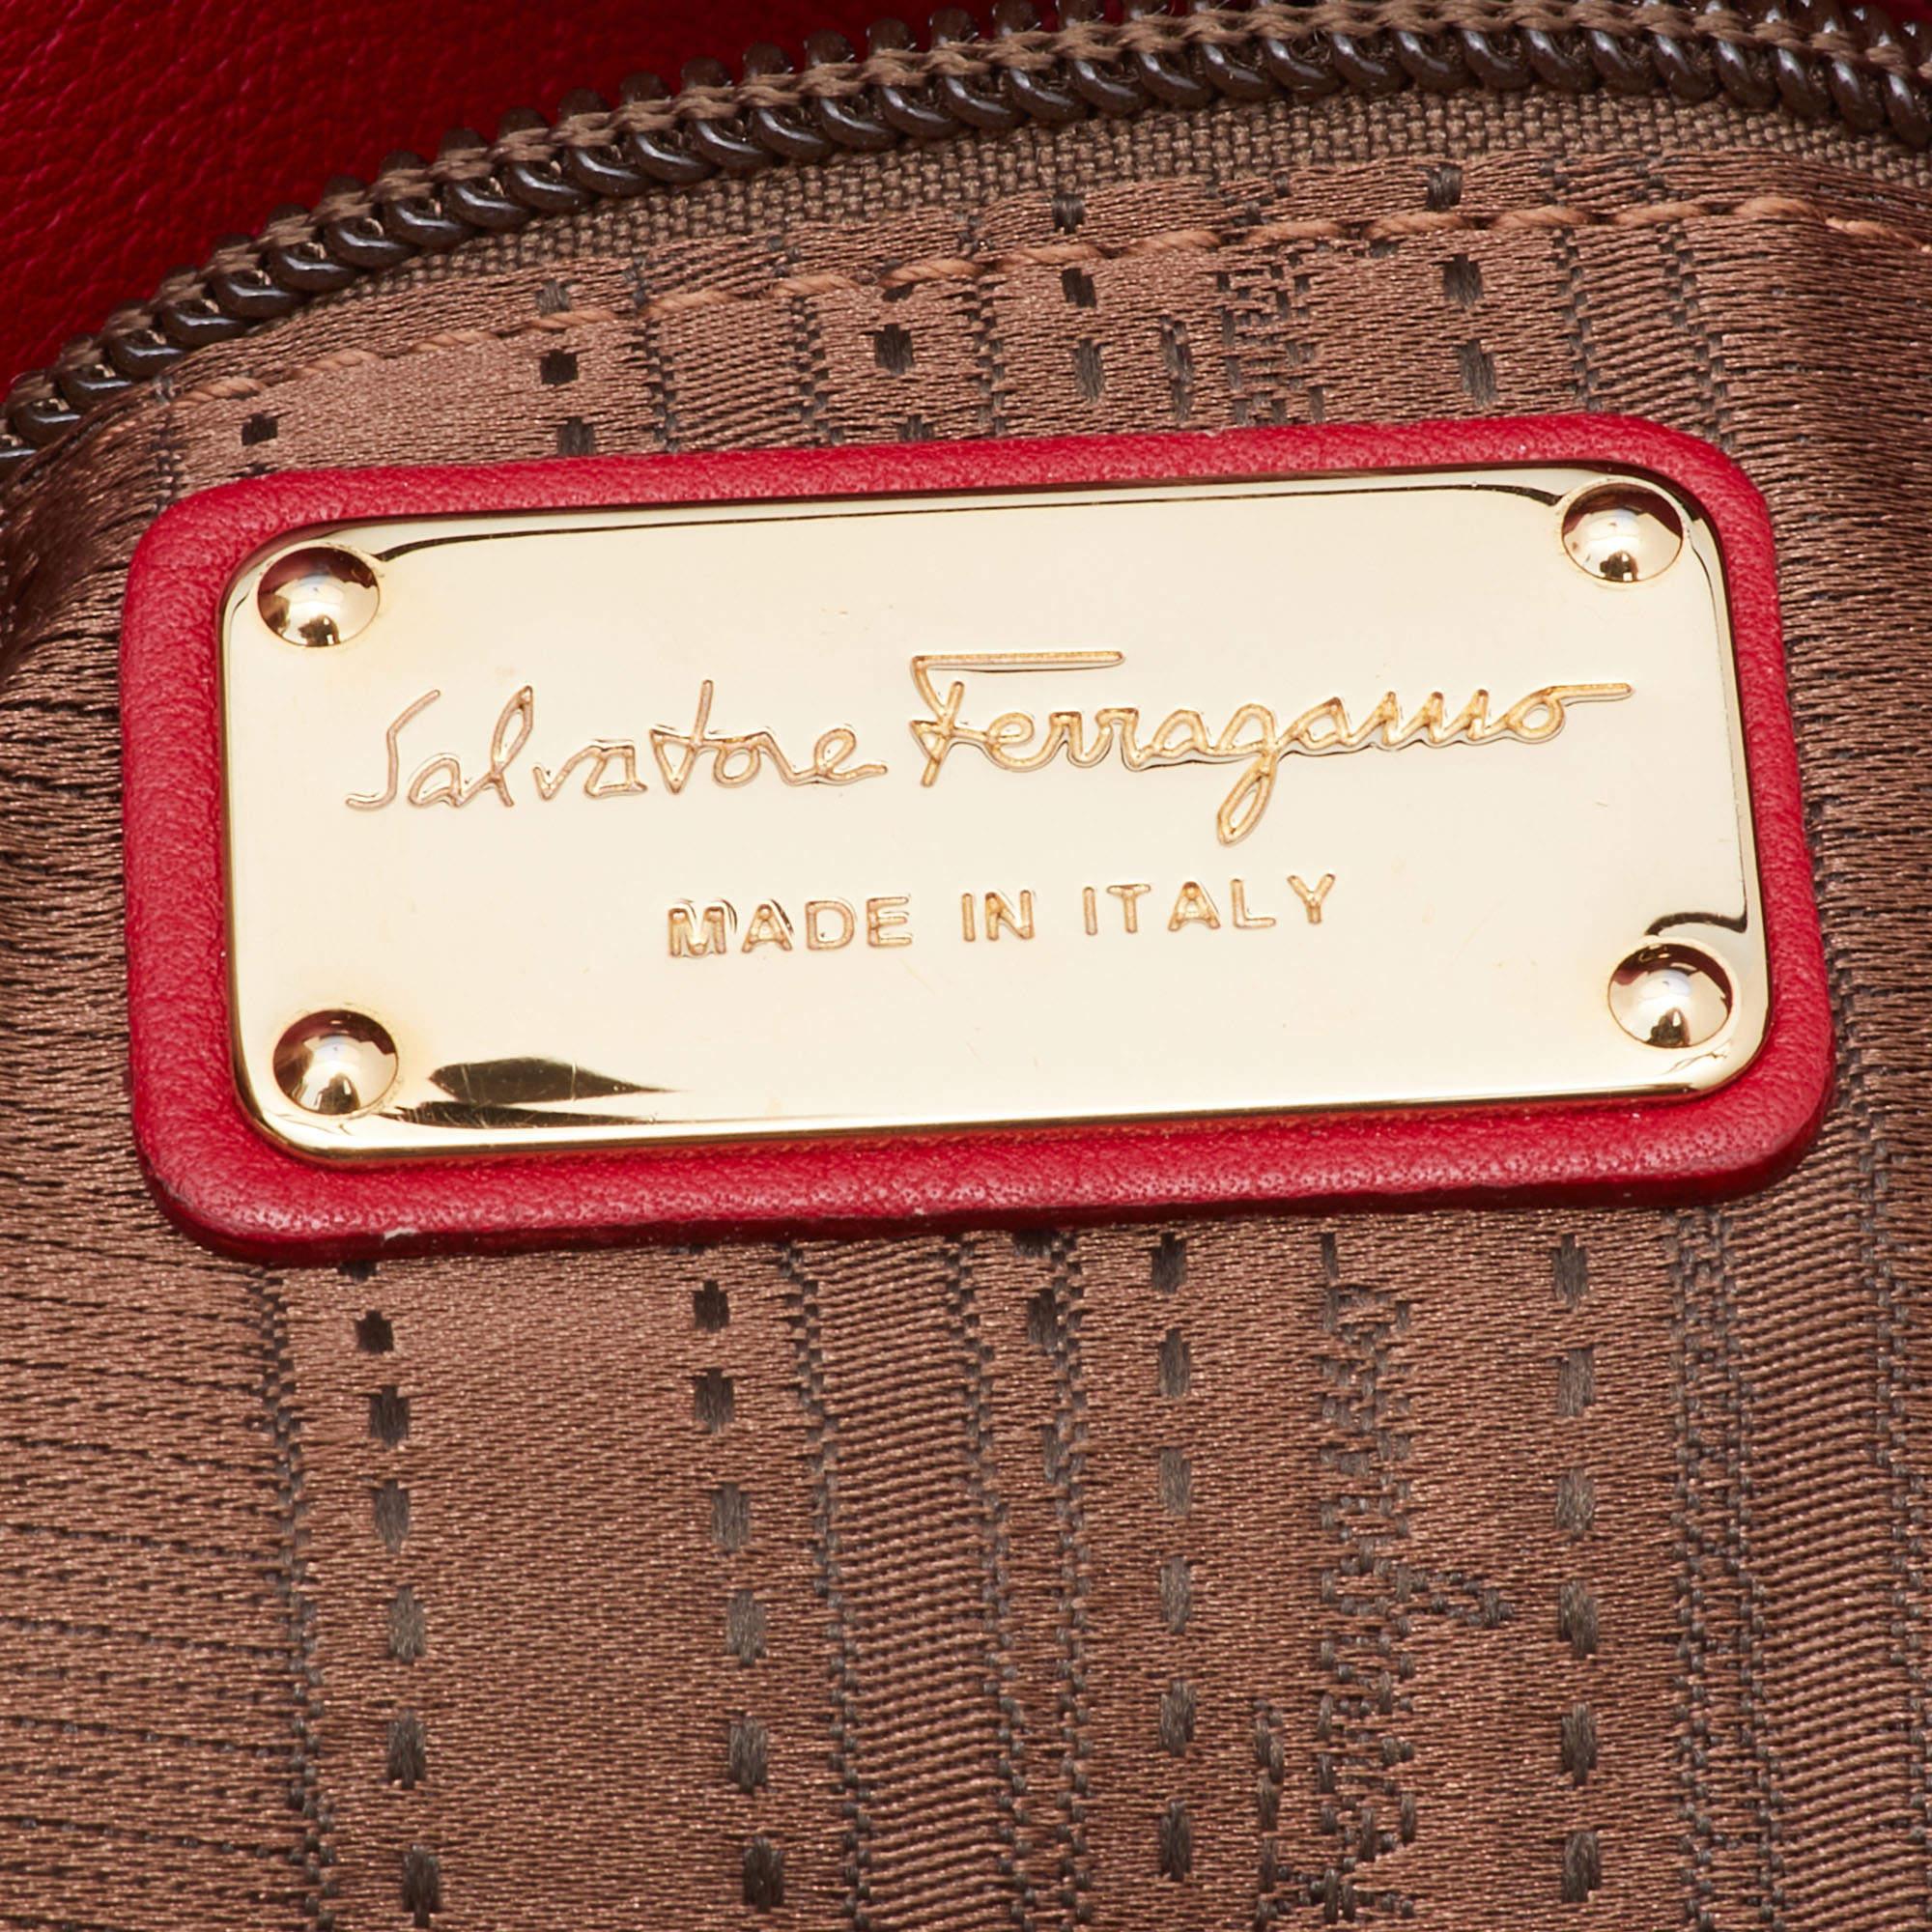 Salvatore Ferragamo Red Leather Gancini Chain Tote 2